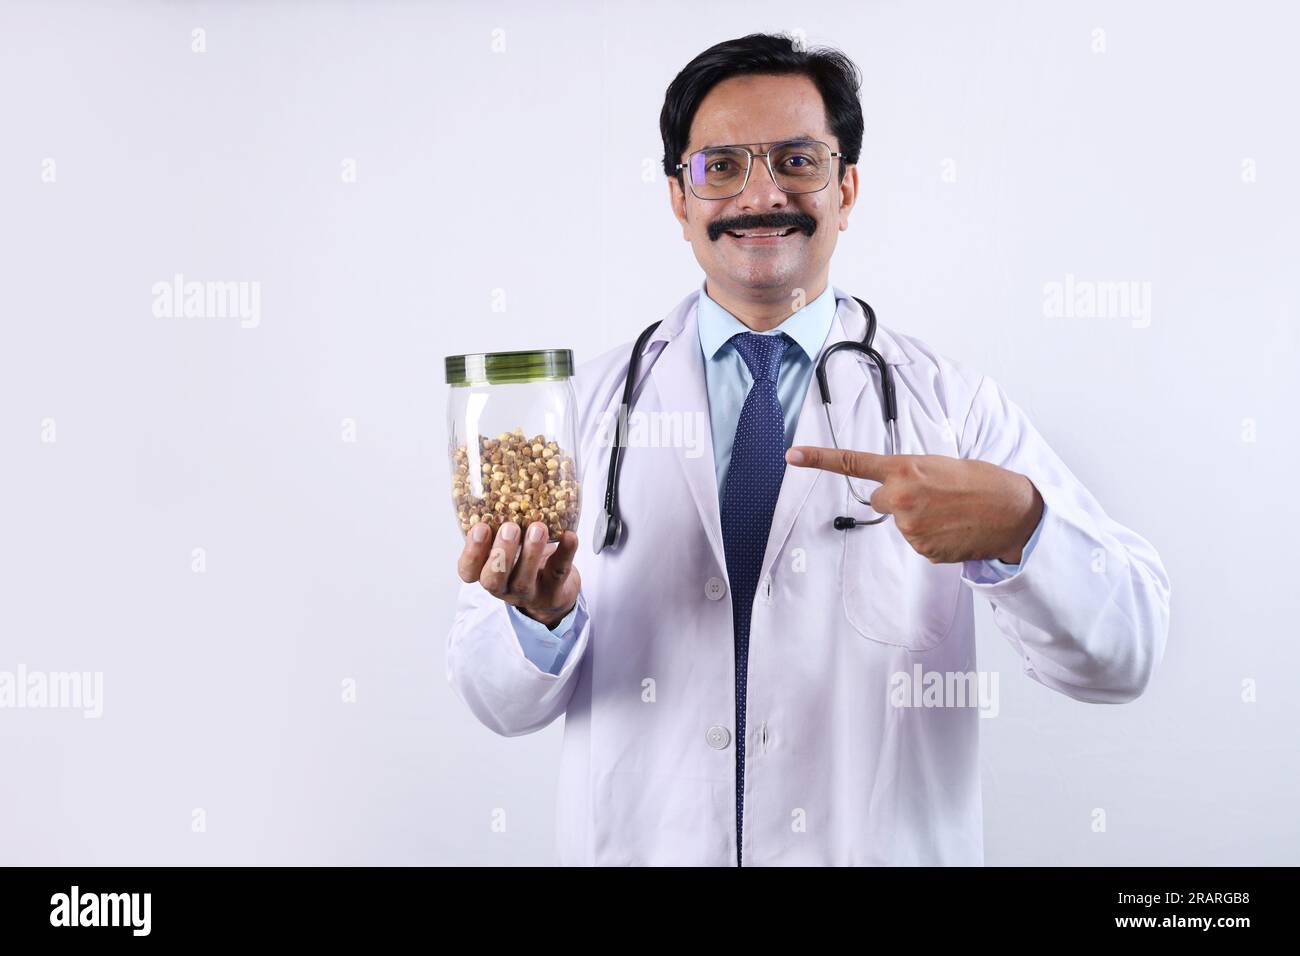 Indiano fiducioso Dottore tenendo un vaso in mano e suggerendo di mangiare fresco e sano. Il medico in piedi su uno sfondo bianco. Foto Stock